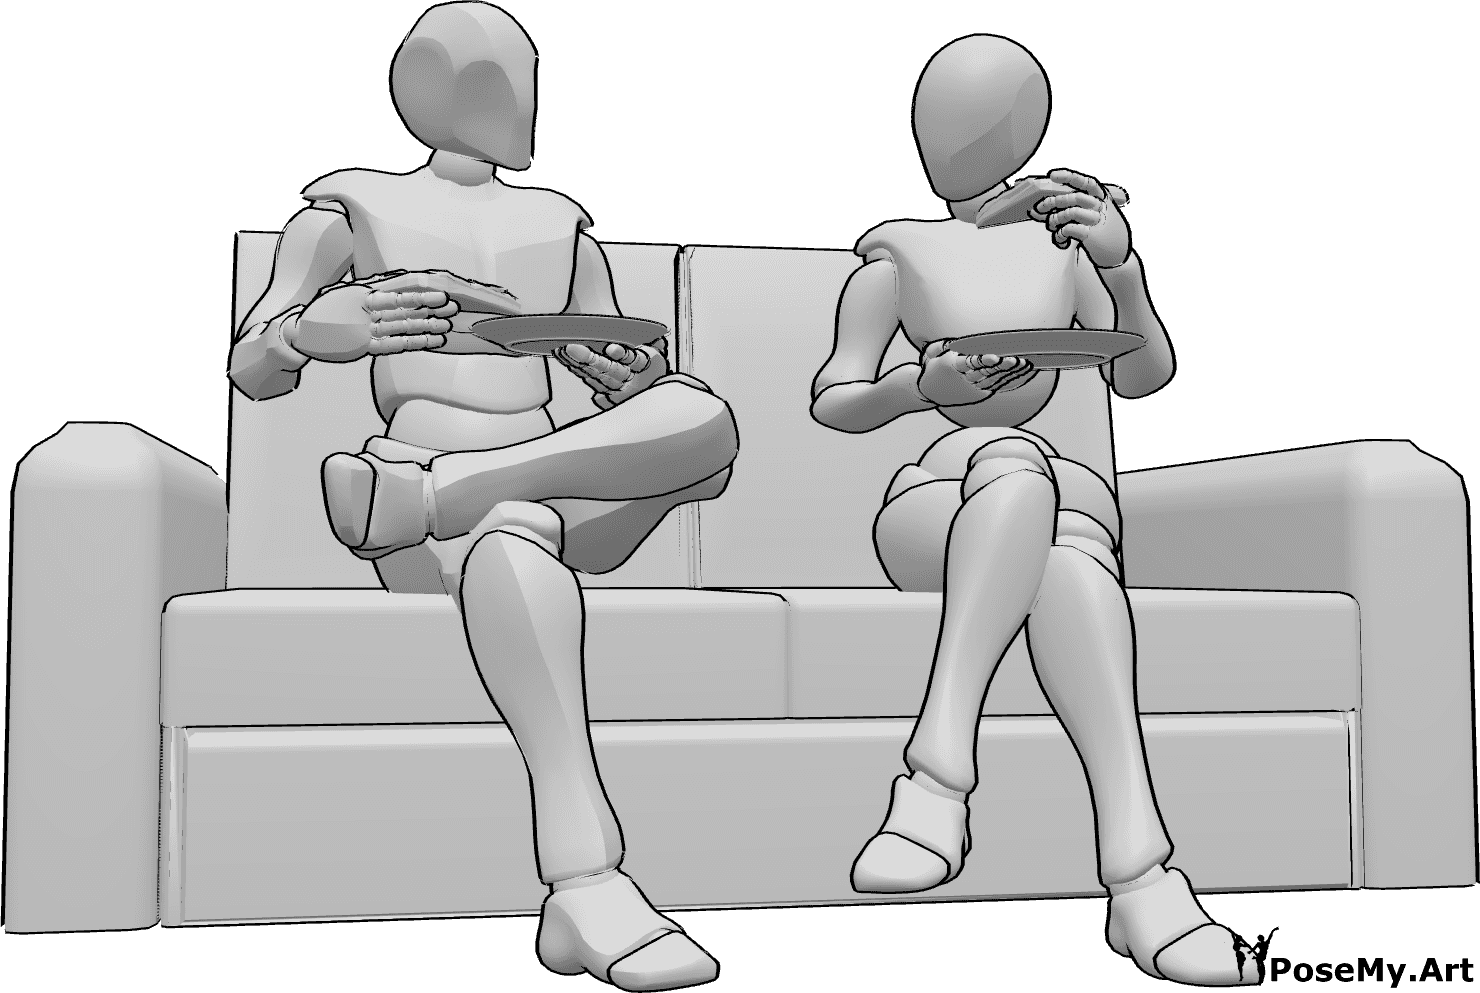 Referência de poses- Pose de pizza sentada - Uma mulher e um homem estão sentados no sofá a comer pizza, segurando pratos e fatias de pizza